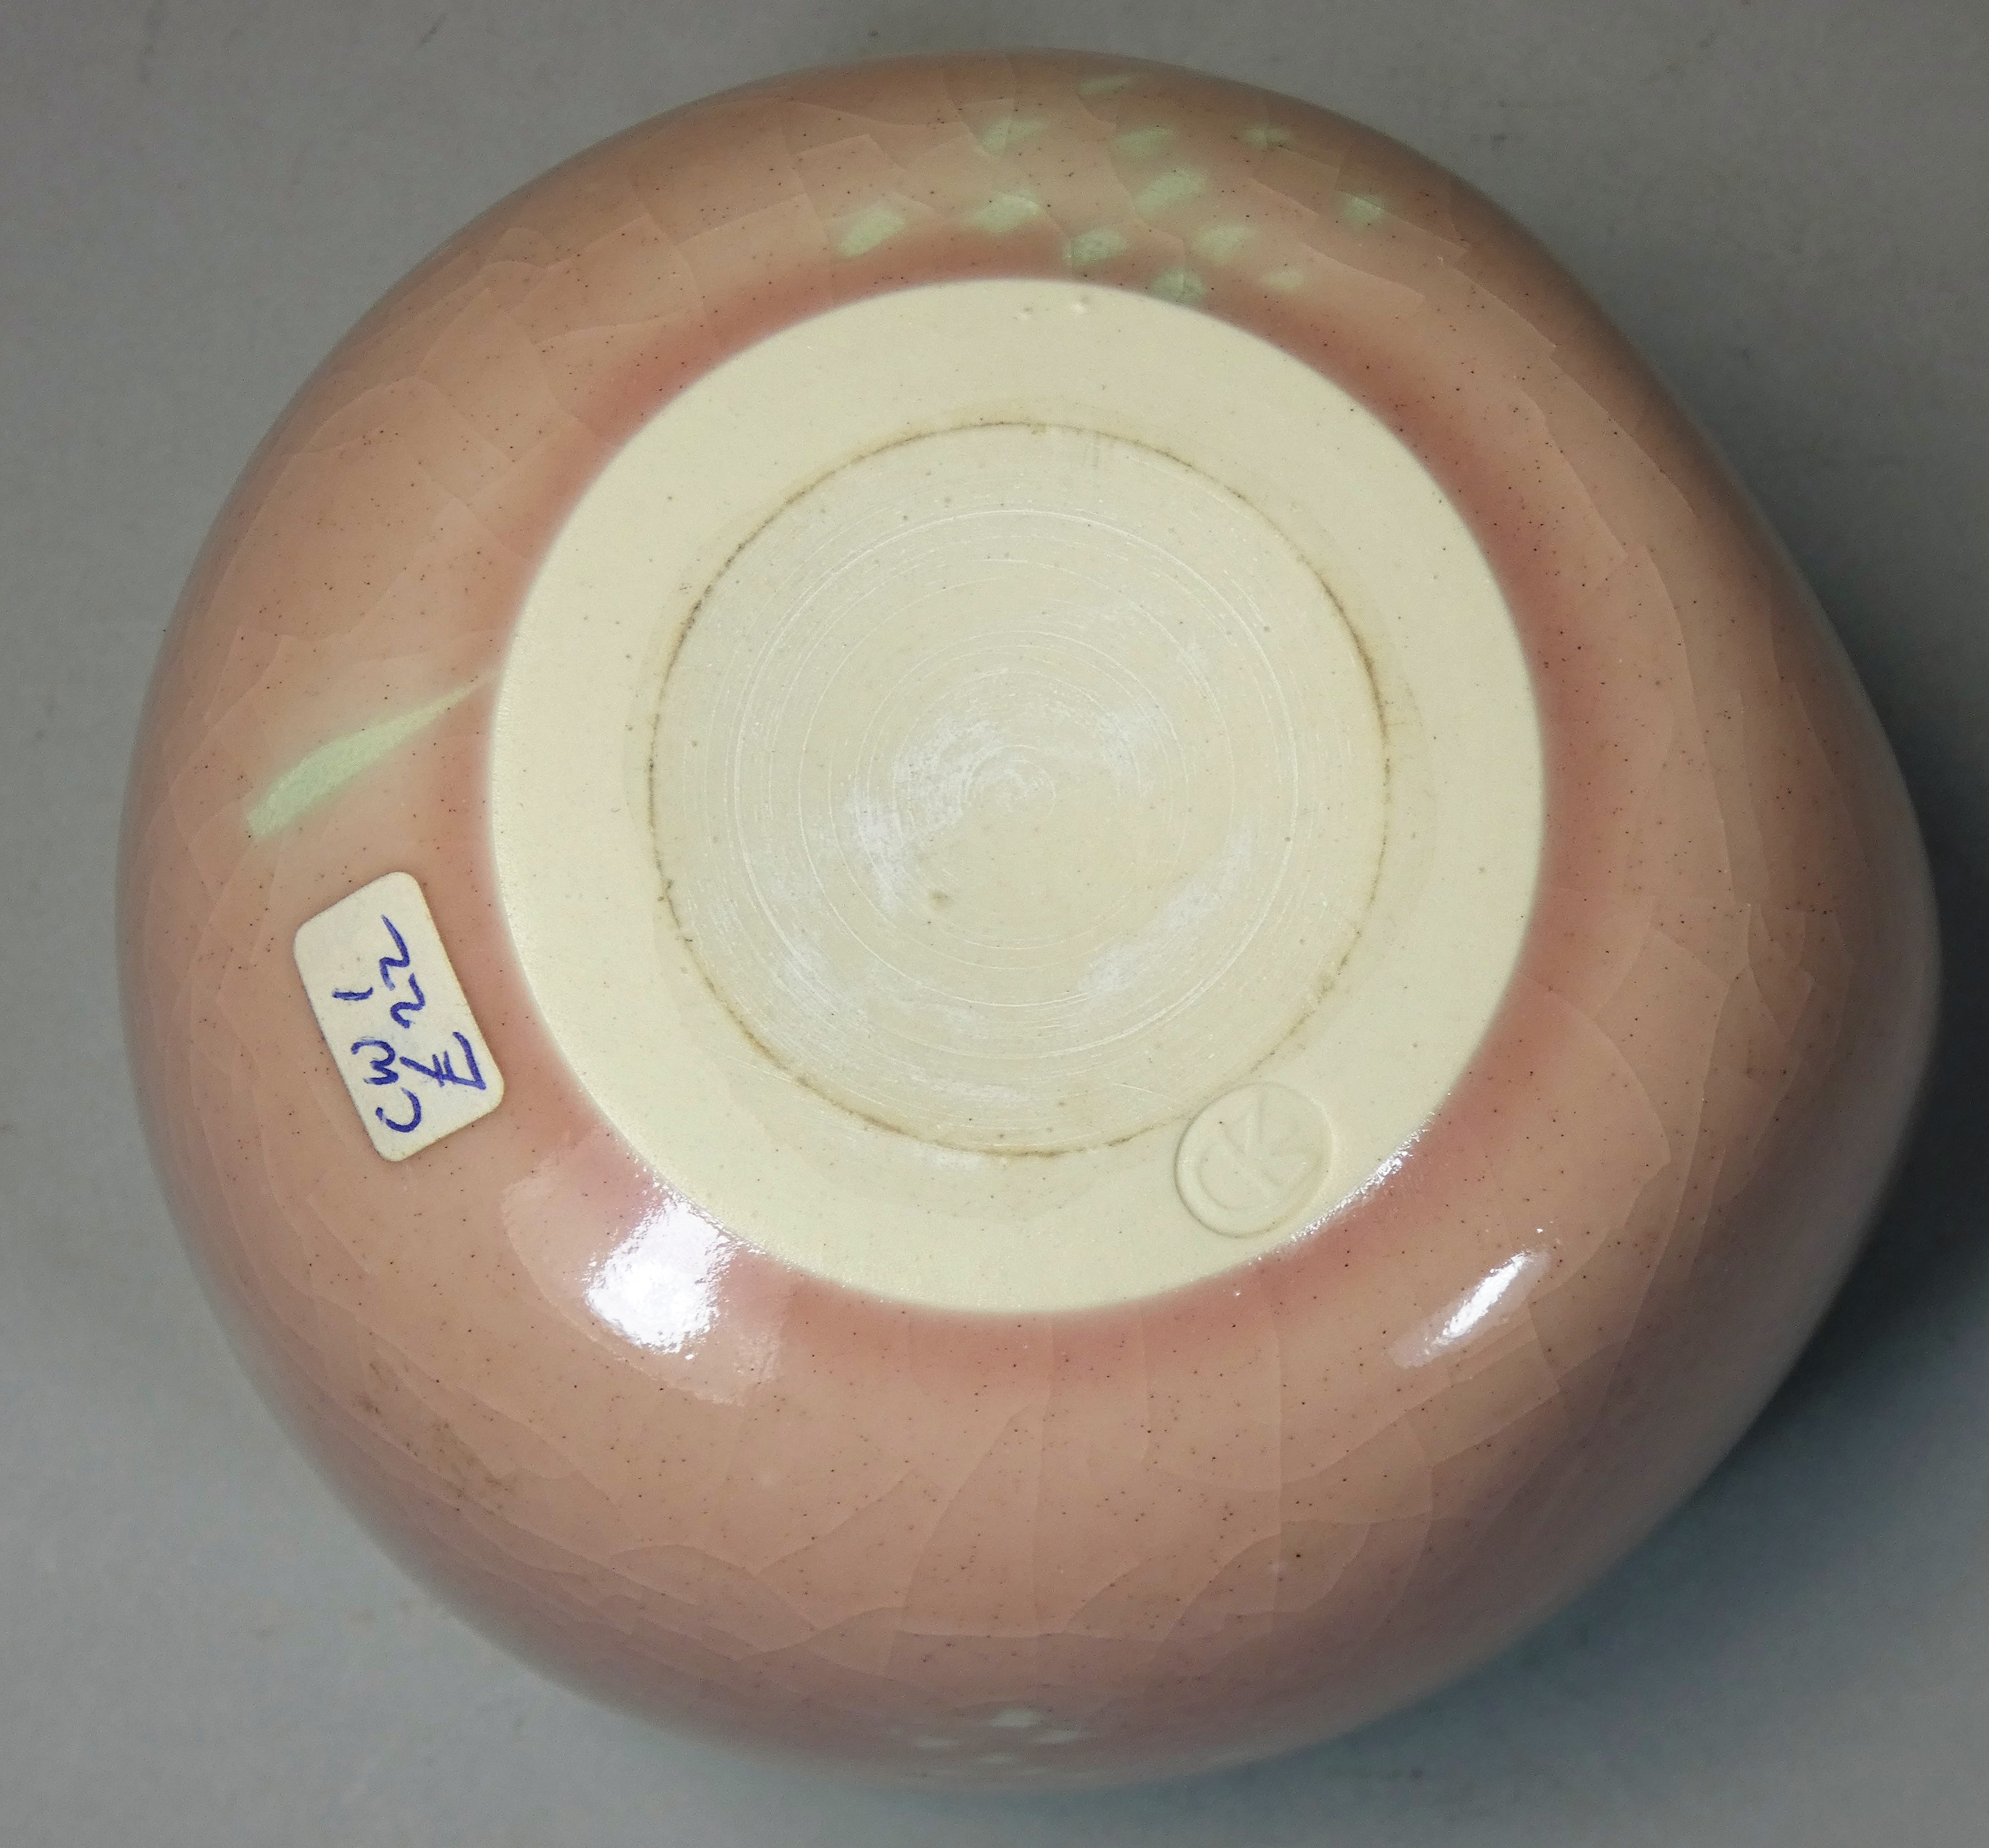 Caroline Whyman, a crackle glazed pouring jug in light pink glaze, celadon interior and rim, - Image 4 of 4